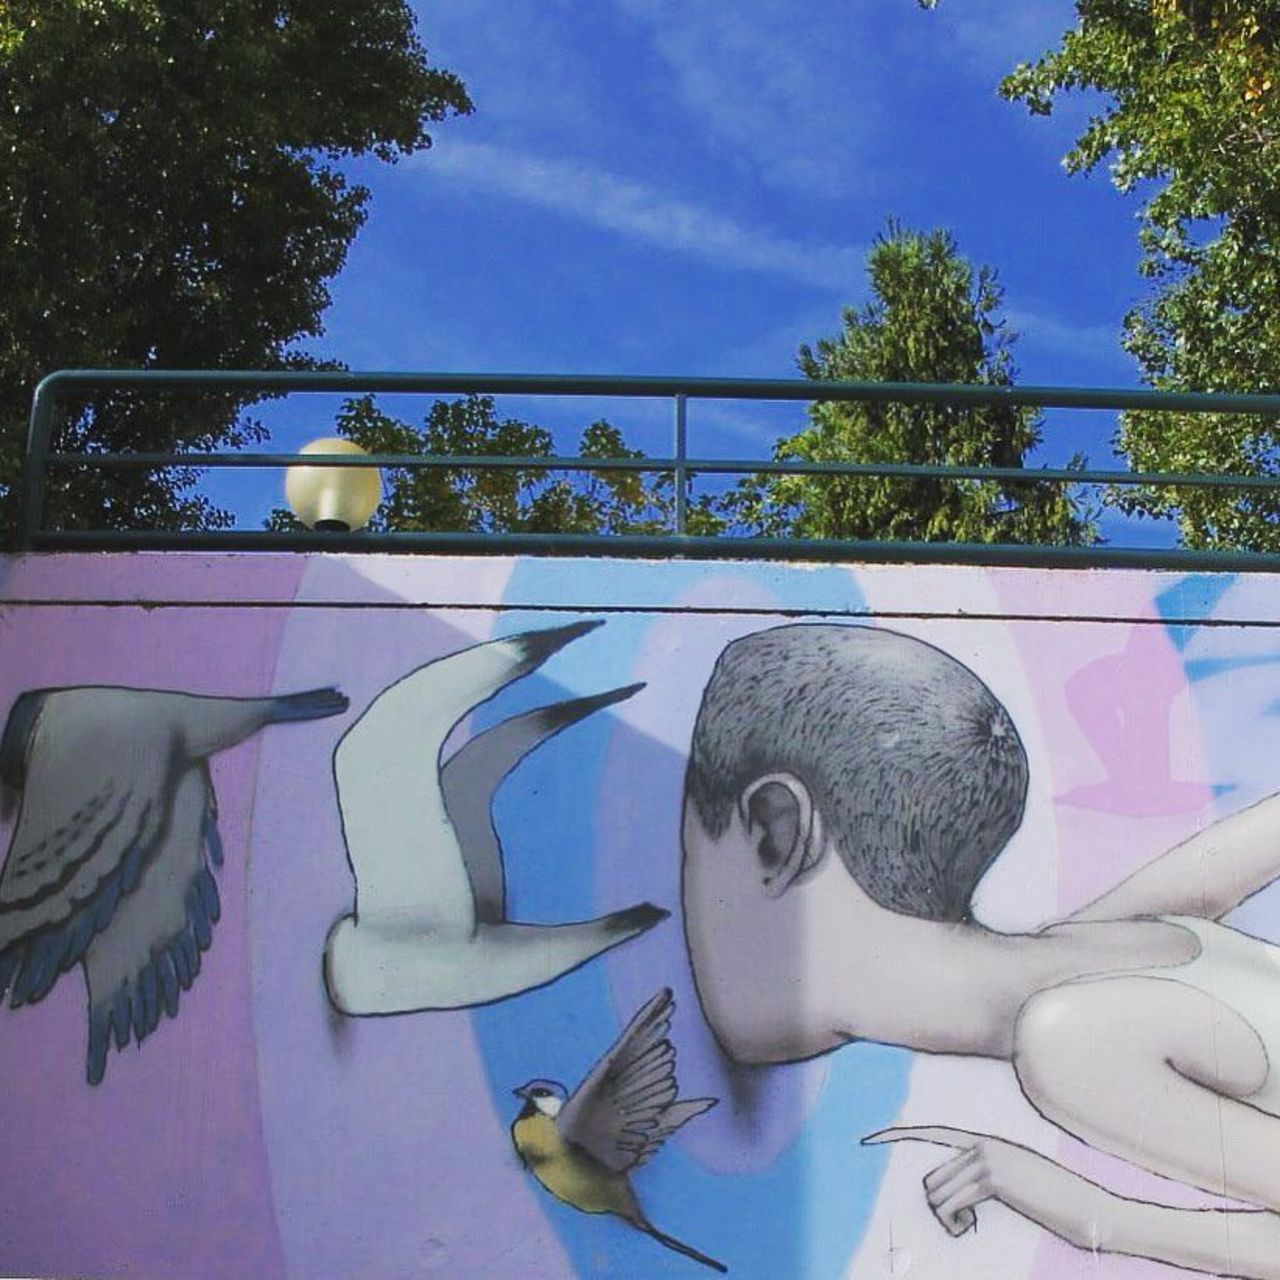 #Paris #graffiti photo by @streetrorart http://ift.tt/1NvTnO9 #StreetArt https://t.co/psPmyHhh5Q